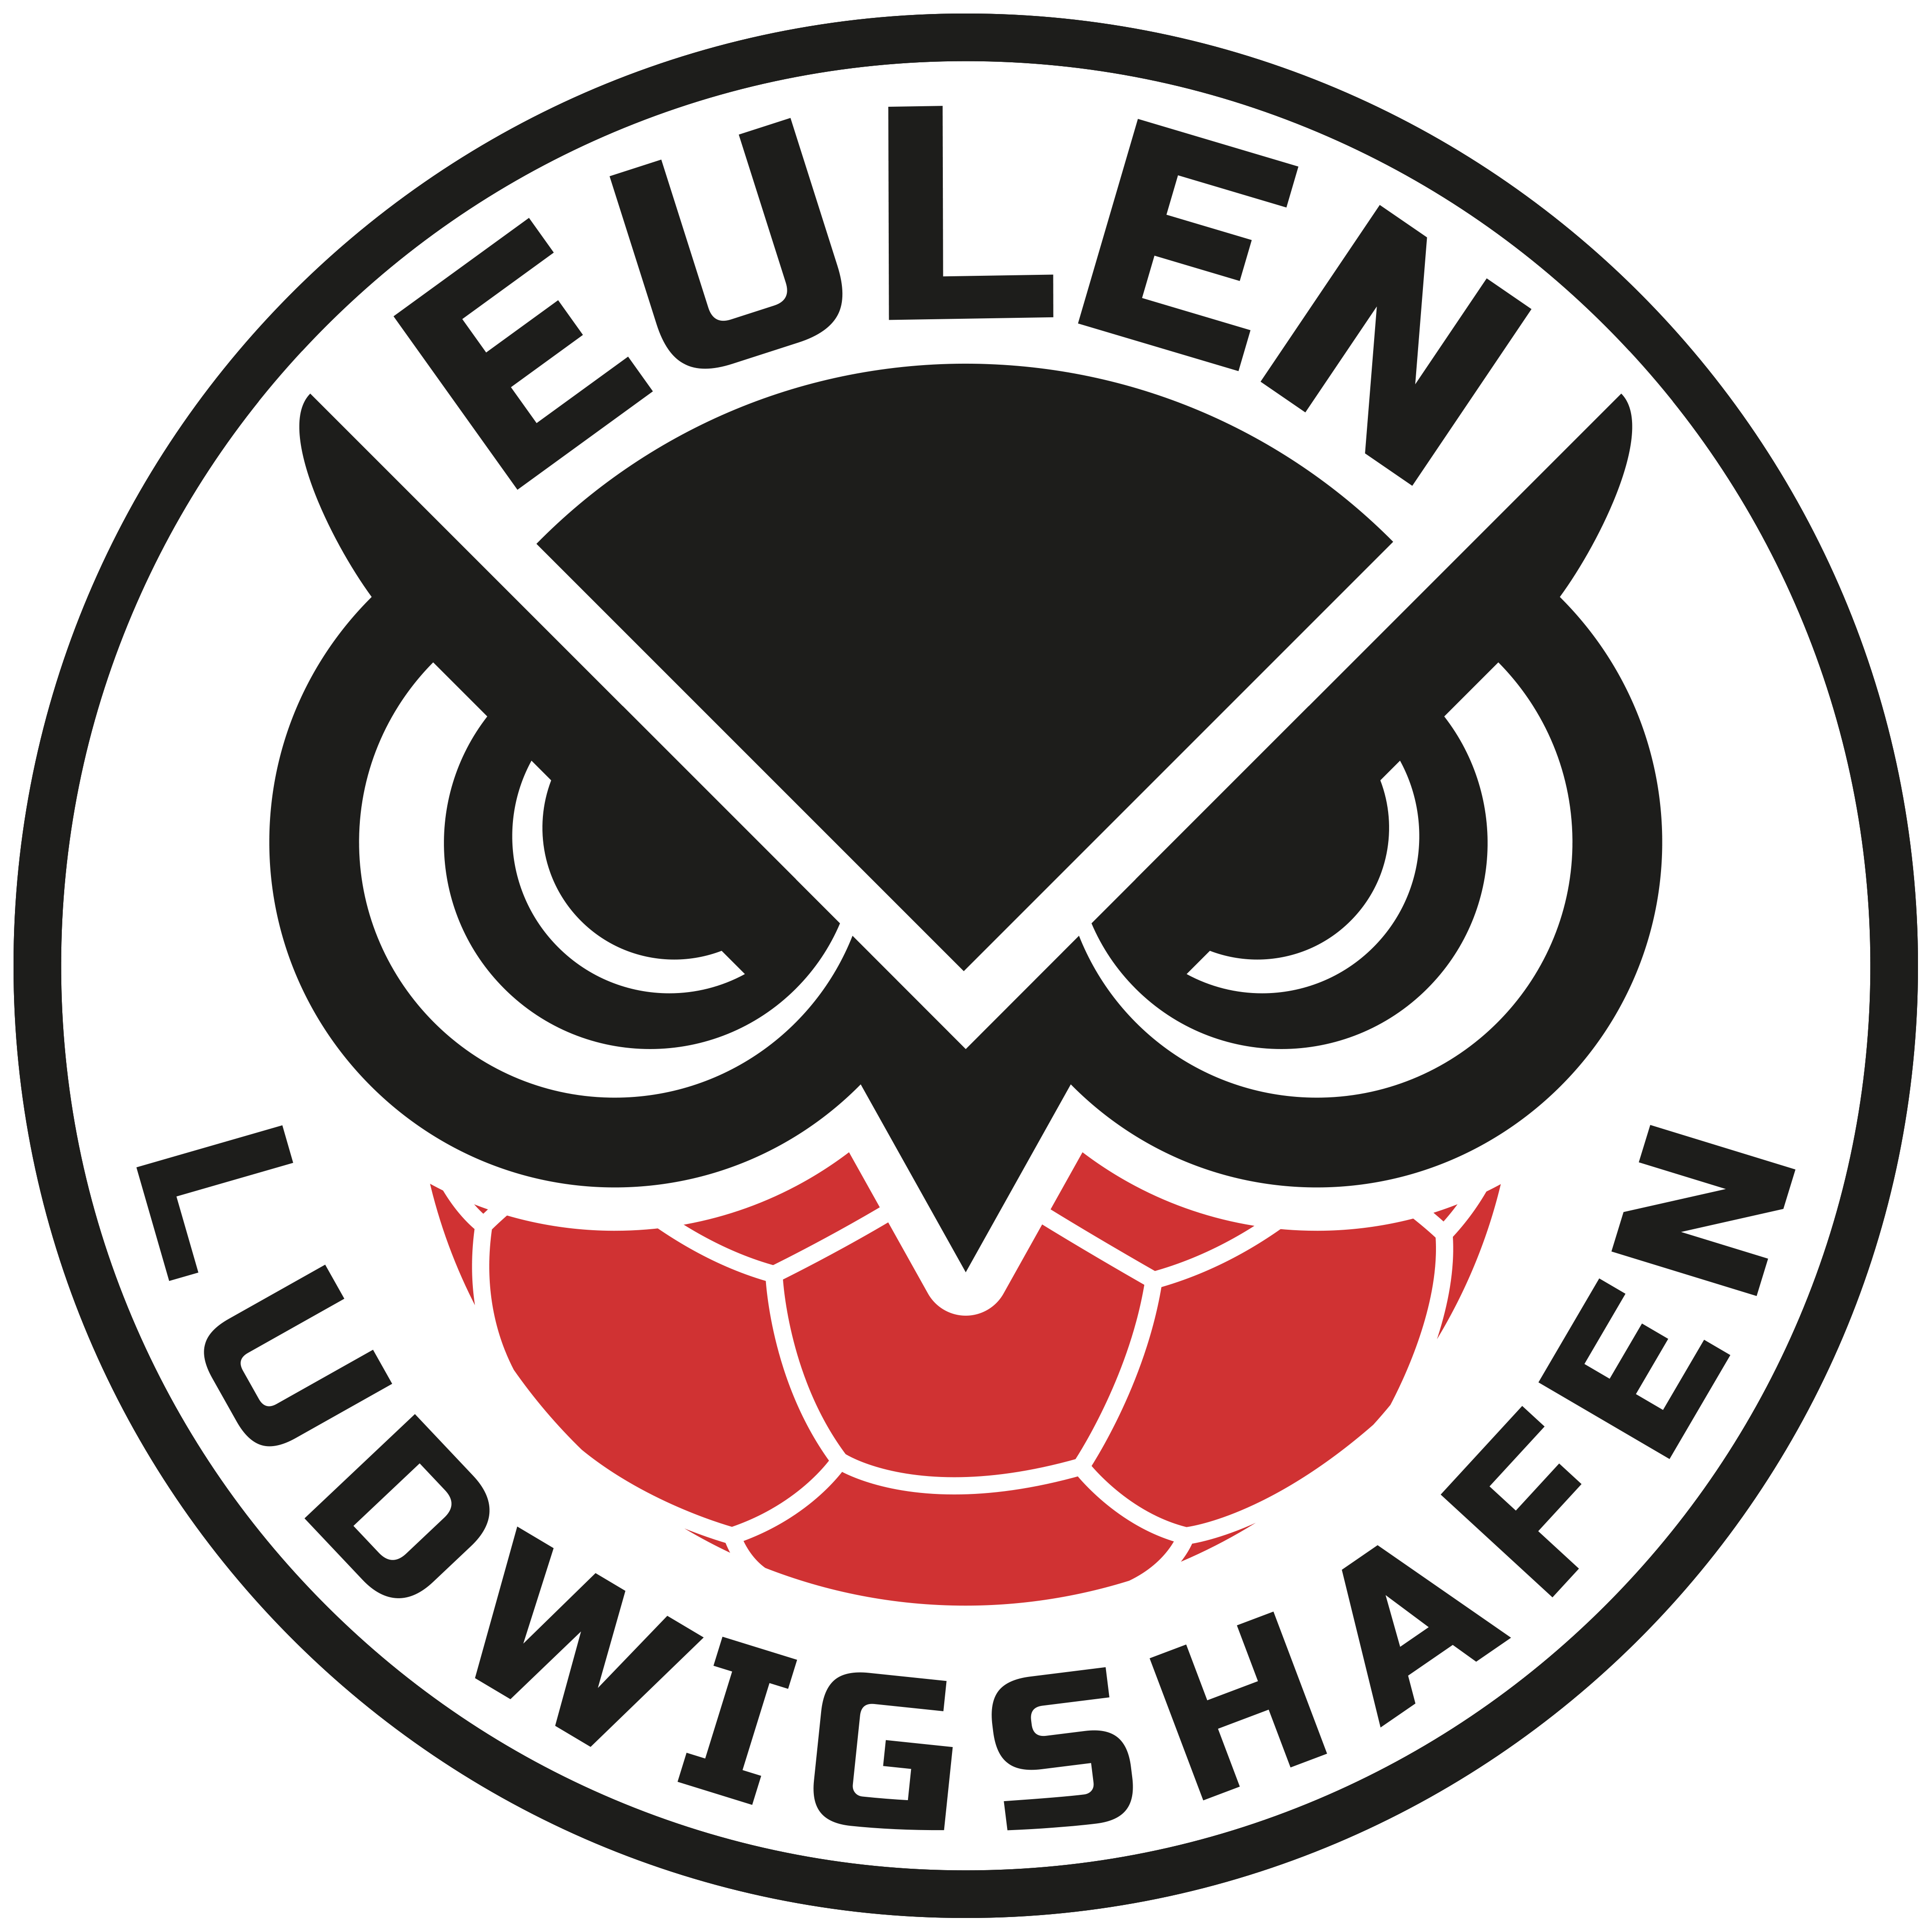 eulen_logo_20_logo